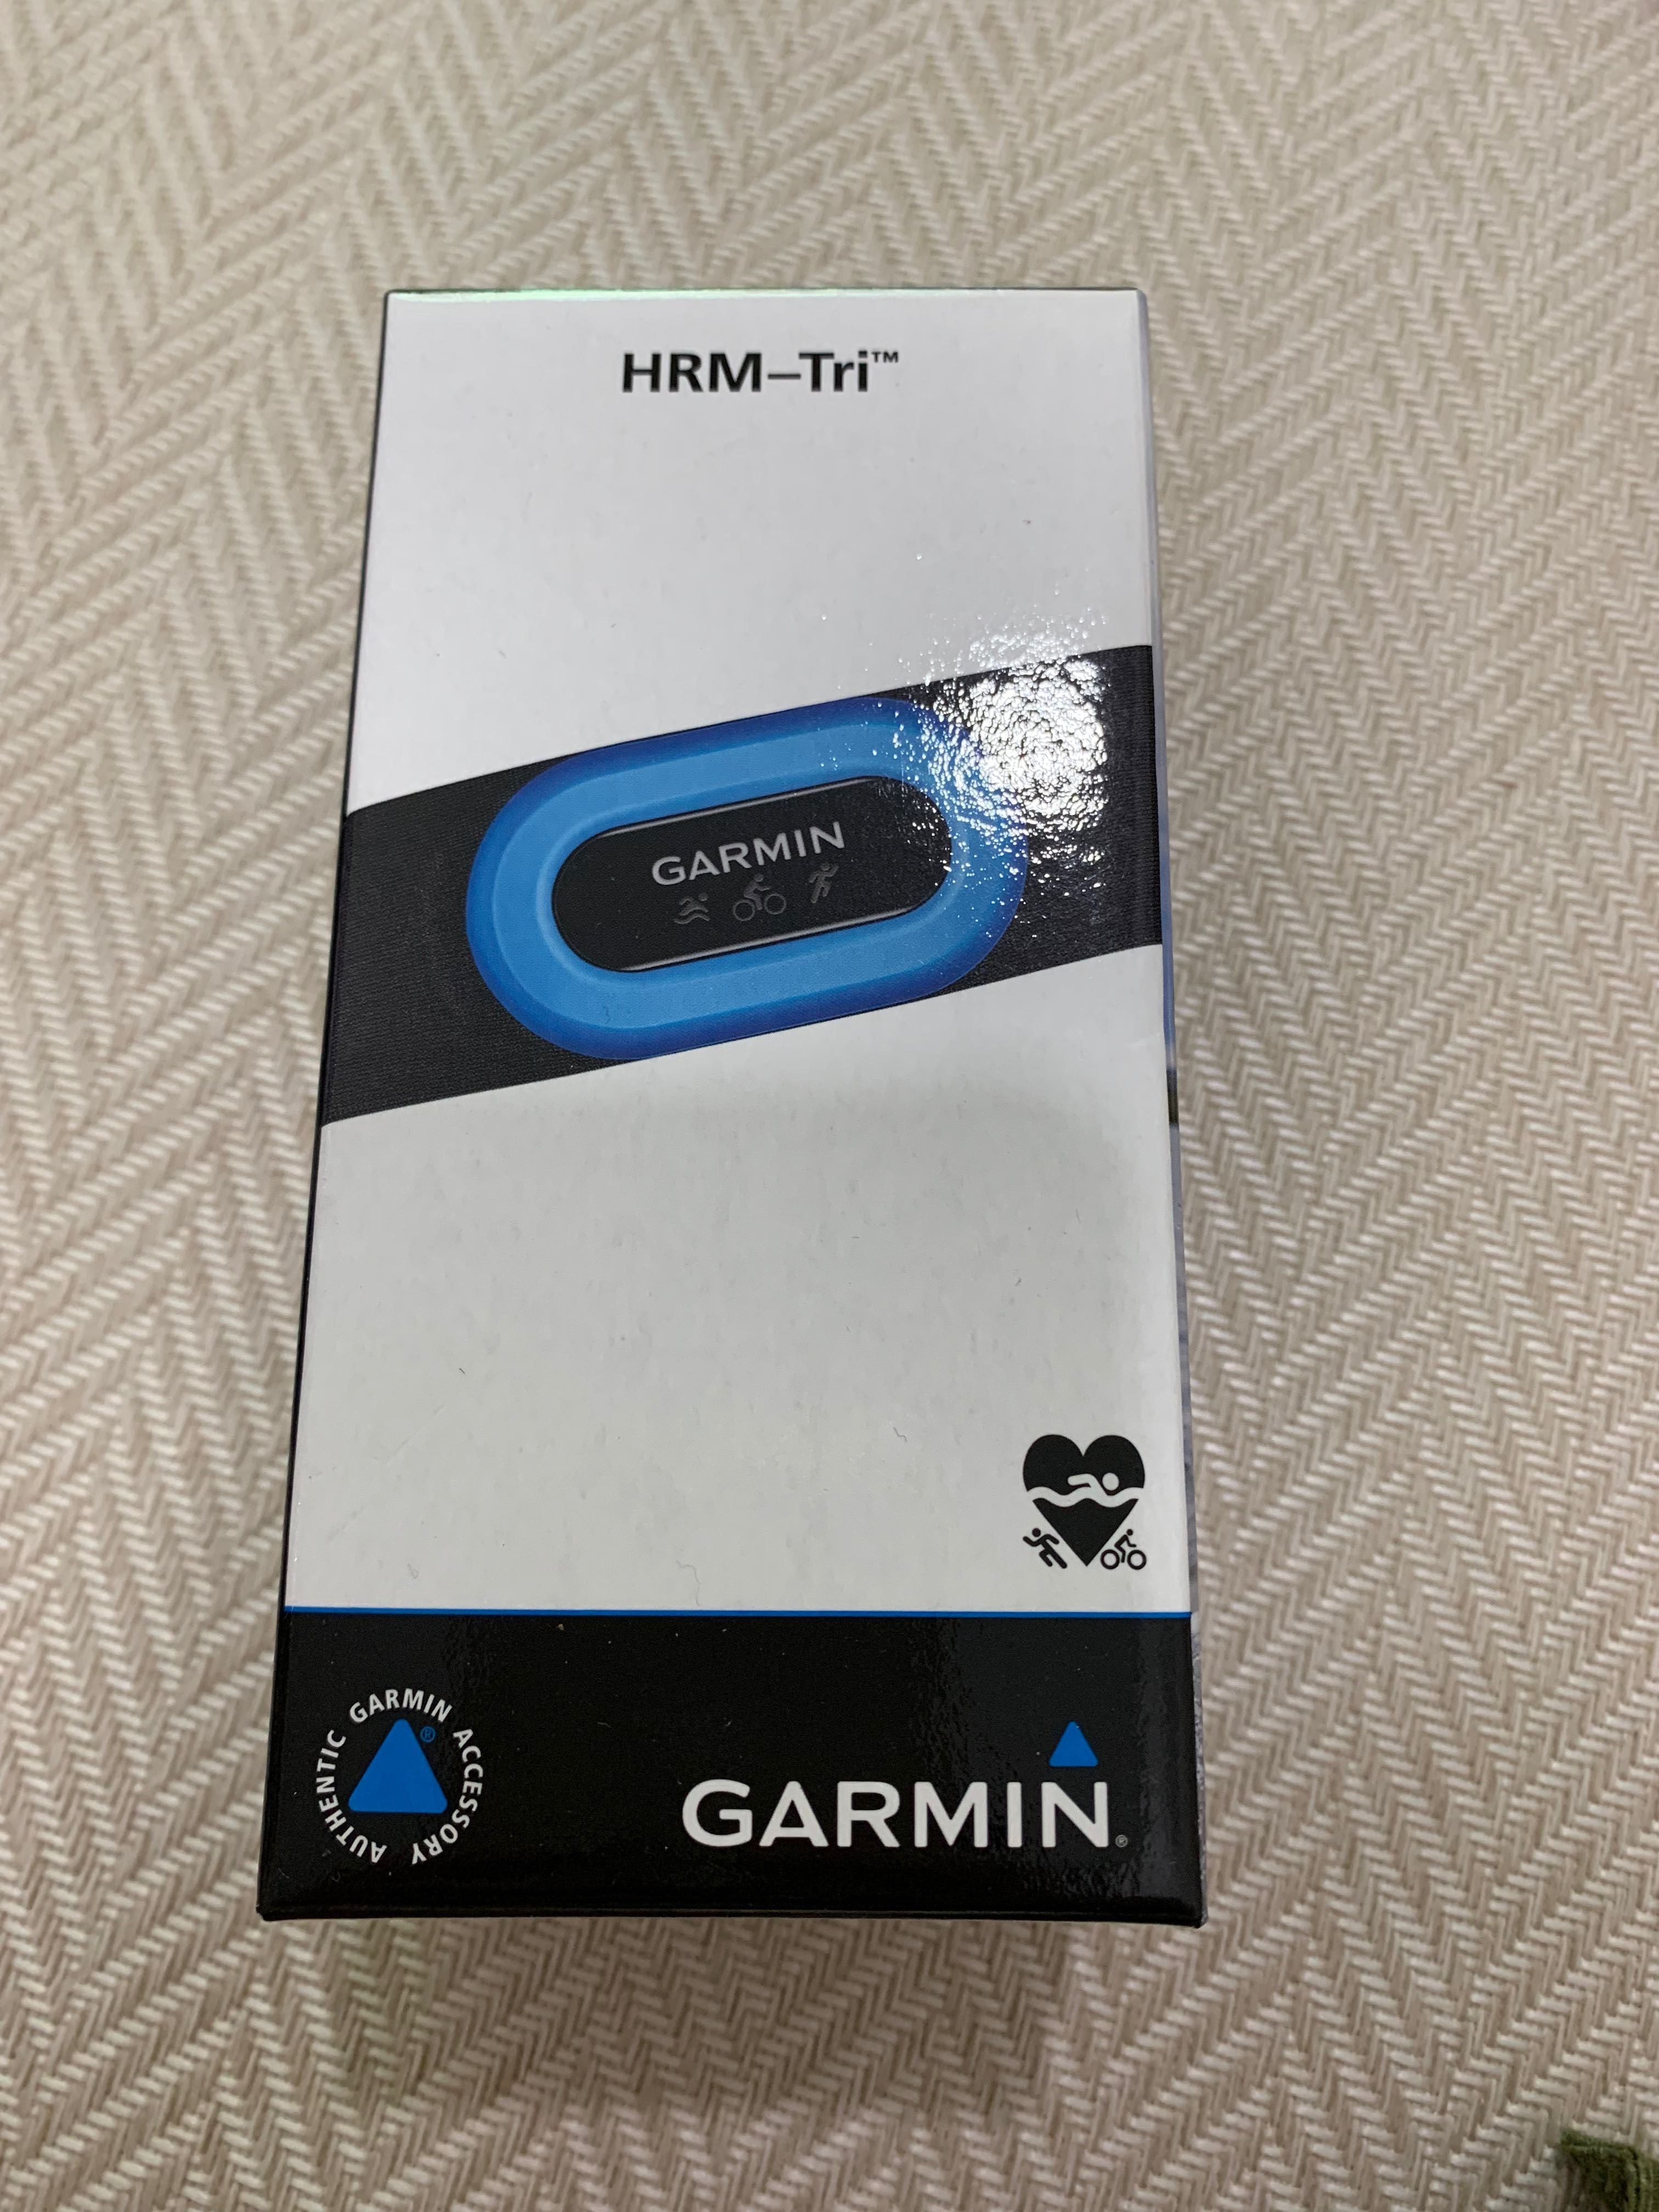 Garmin HRM-Tri™ Heart Rate Monitor 